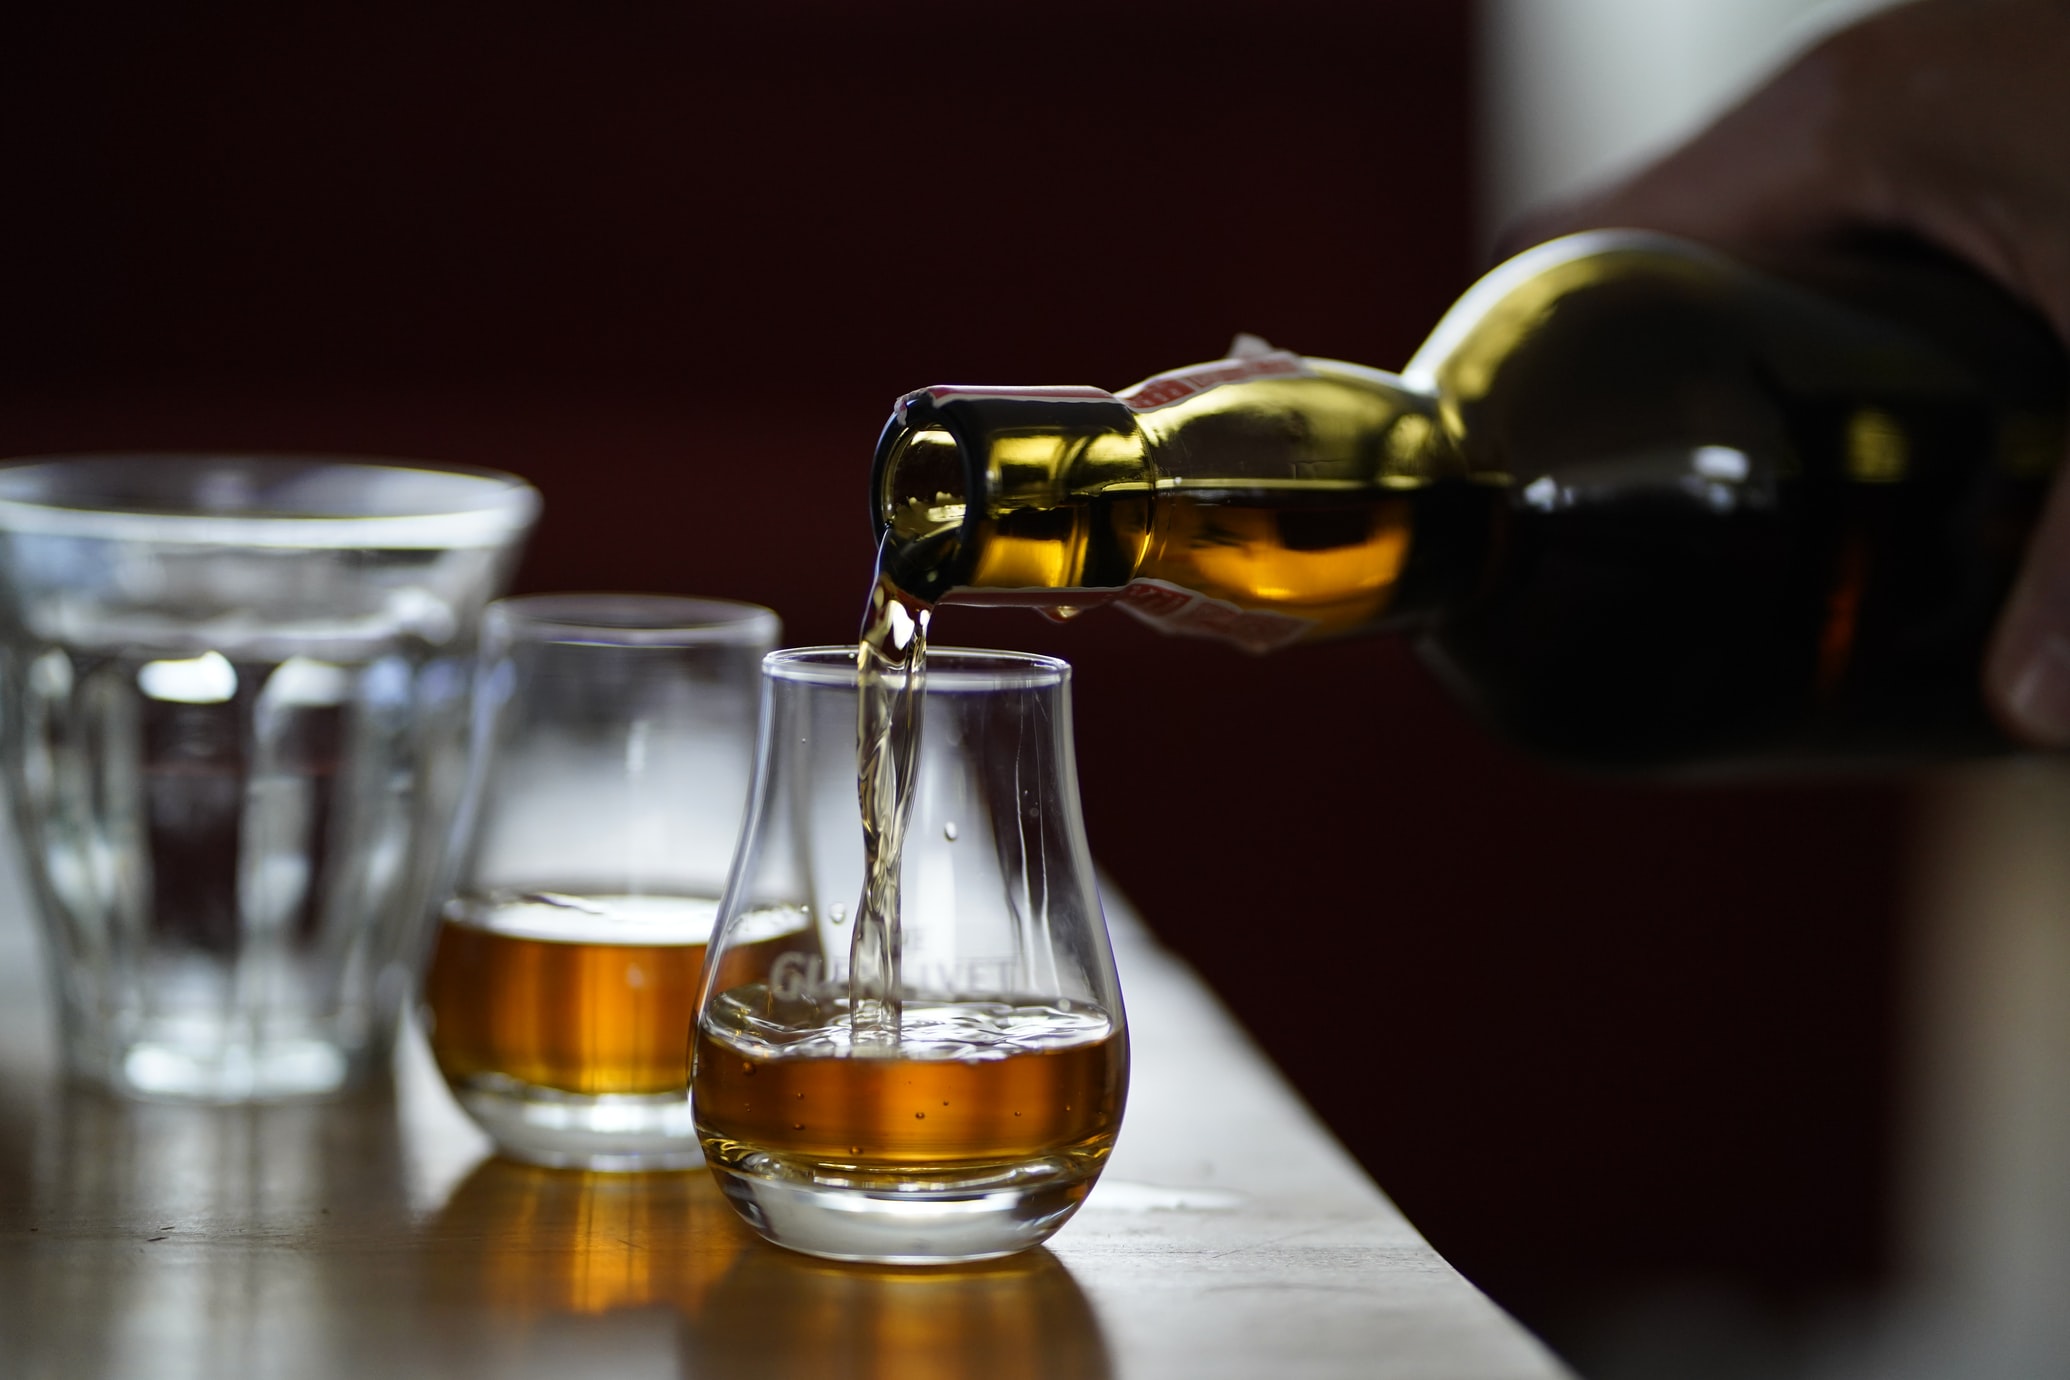 Güncel alkol fiyat aralıkları 2022 | Bira, rakı, votka, şarap, viski fiyat aralıkları ne kadar, kaç TL oldu 2022? İşte alkol fiyat aralıkları listesi